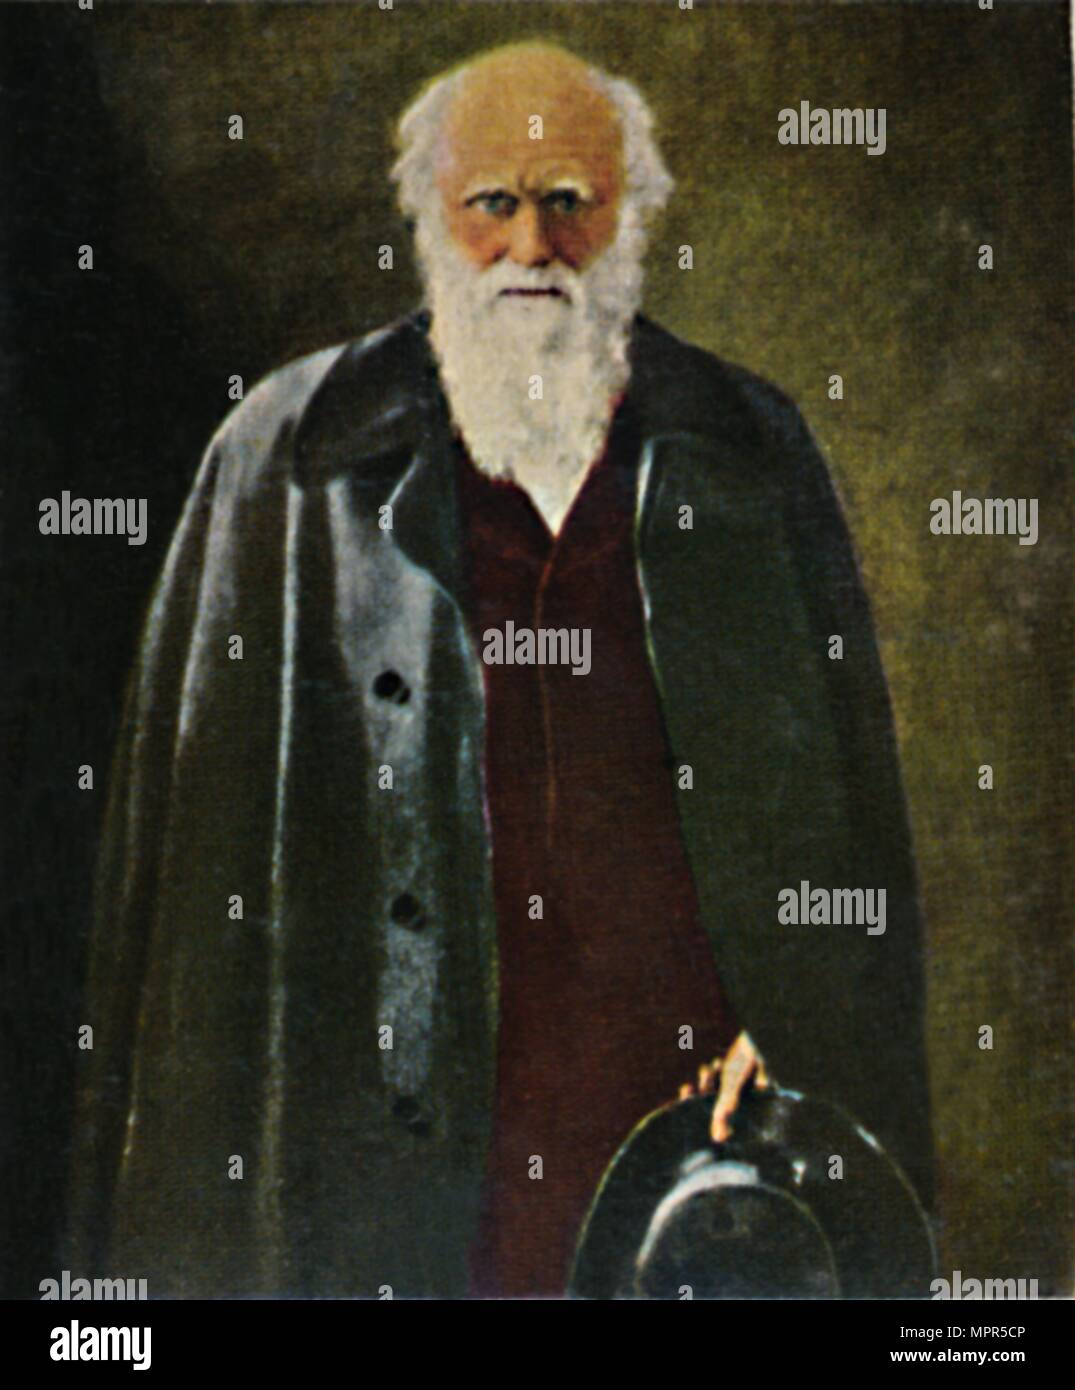 'Charles Darwin 1809-1882. - Gemälde von Collier', 1934. Artist: Unknown. Stock Photo